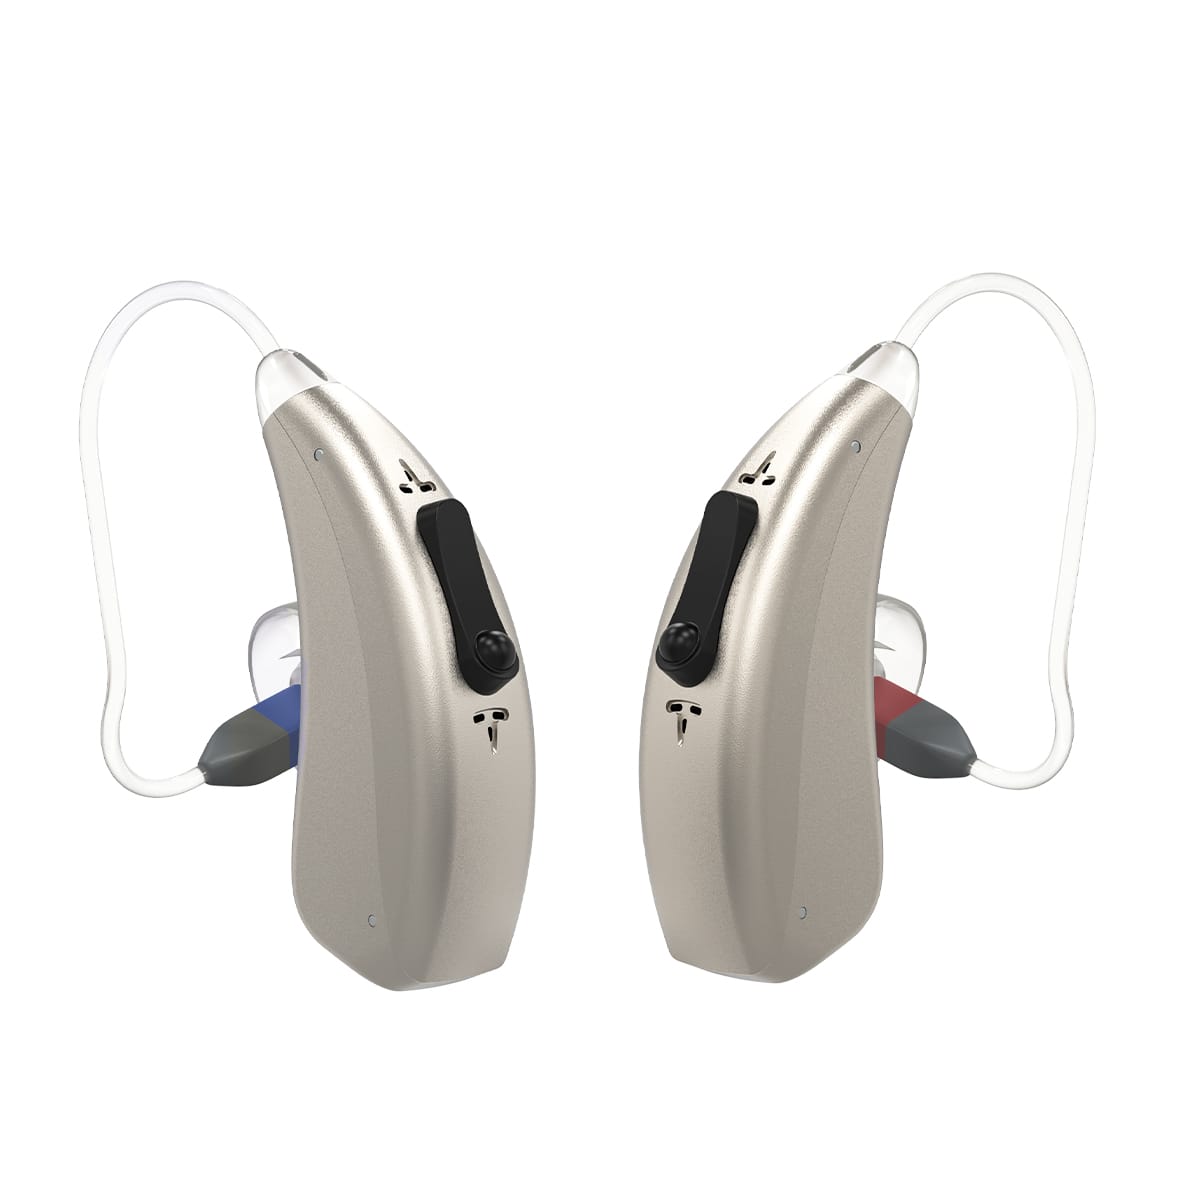 eEAR BTE-RIC-435 est une aide auditive rechargeable Receiver-In-Canal (RIC), équipée d'un algorithme d'aide auditive avancé.